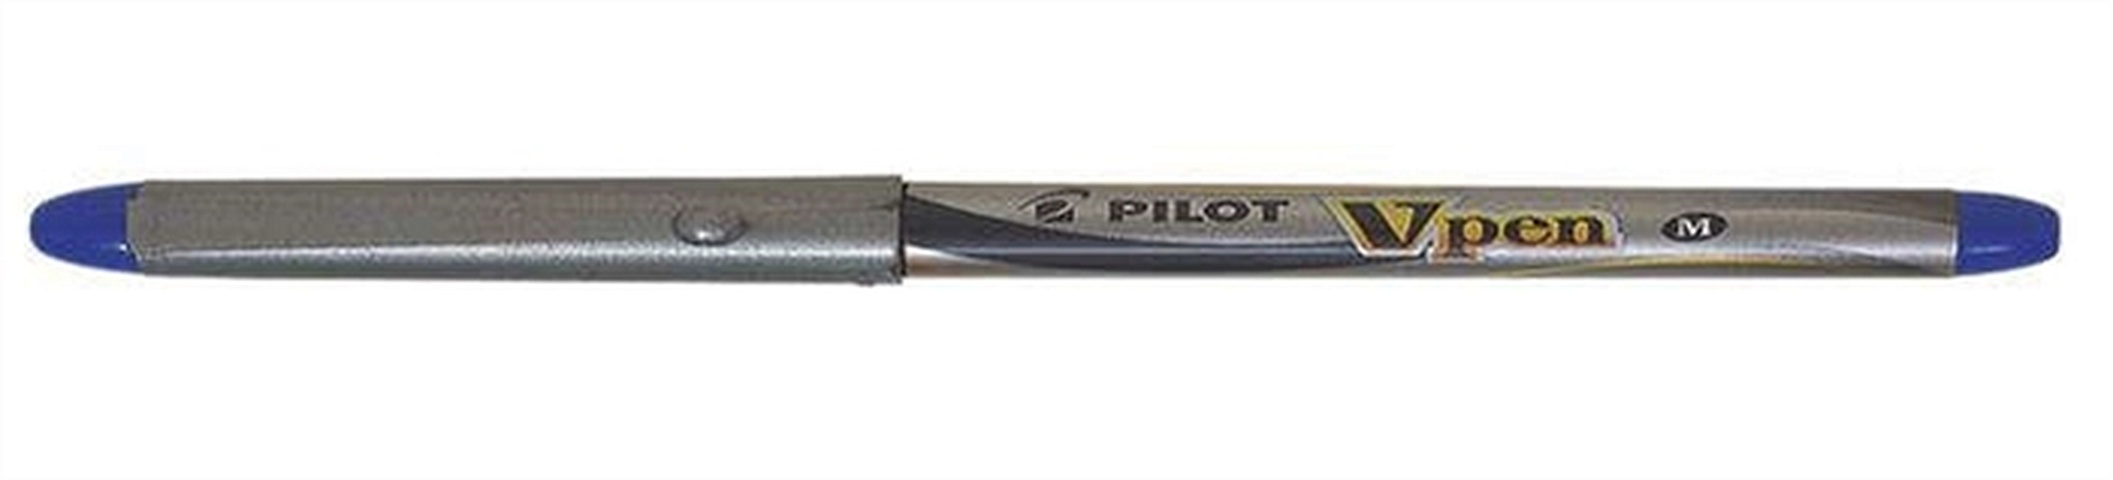 Ручка перьевая, синяя Pilot одноразовая SVP-4M L ручка перьевая pelikan school griffix pl805612 синий a для правшей карт уп